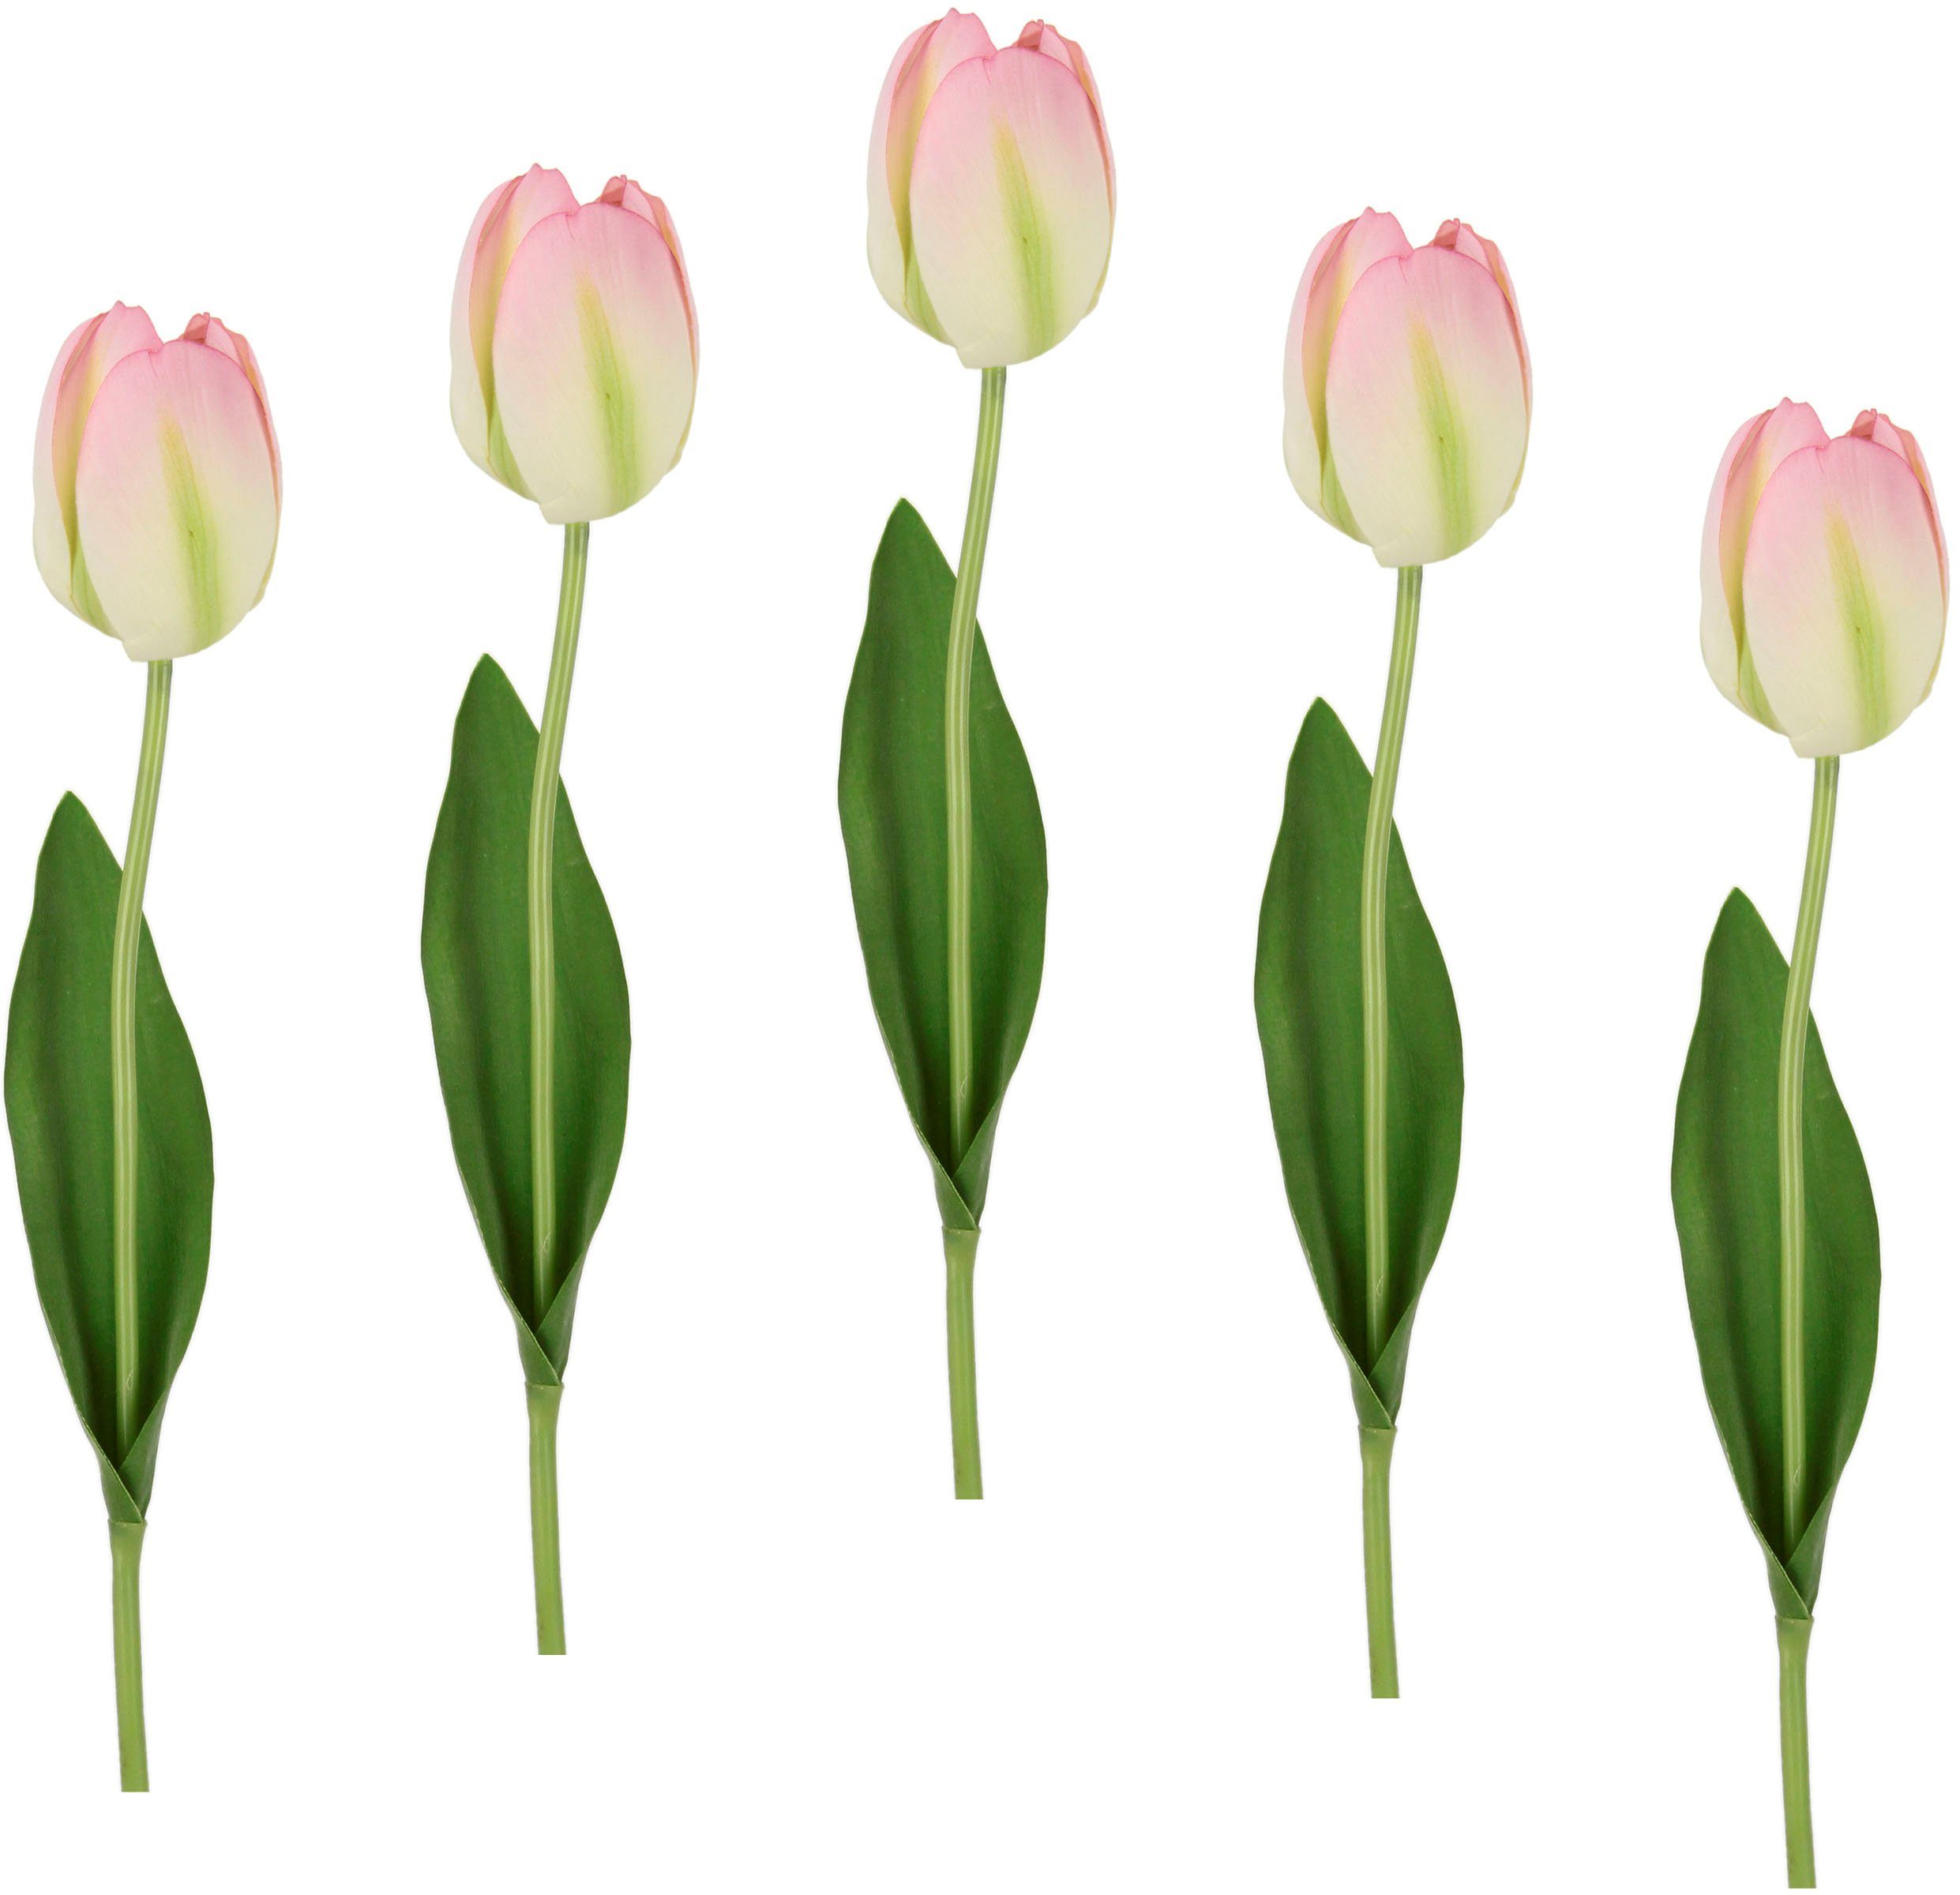 Kunstblume Real Touch Tulpen, I.GE.A., Höhe 67 cm, 5er Set künstliche Tulpenknospen, Kunstblumen, Stielblume weiß/rosa